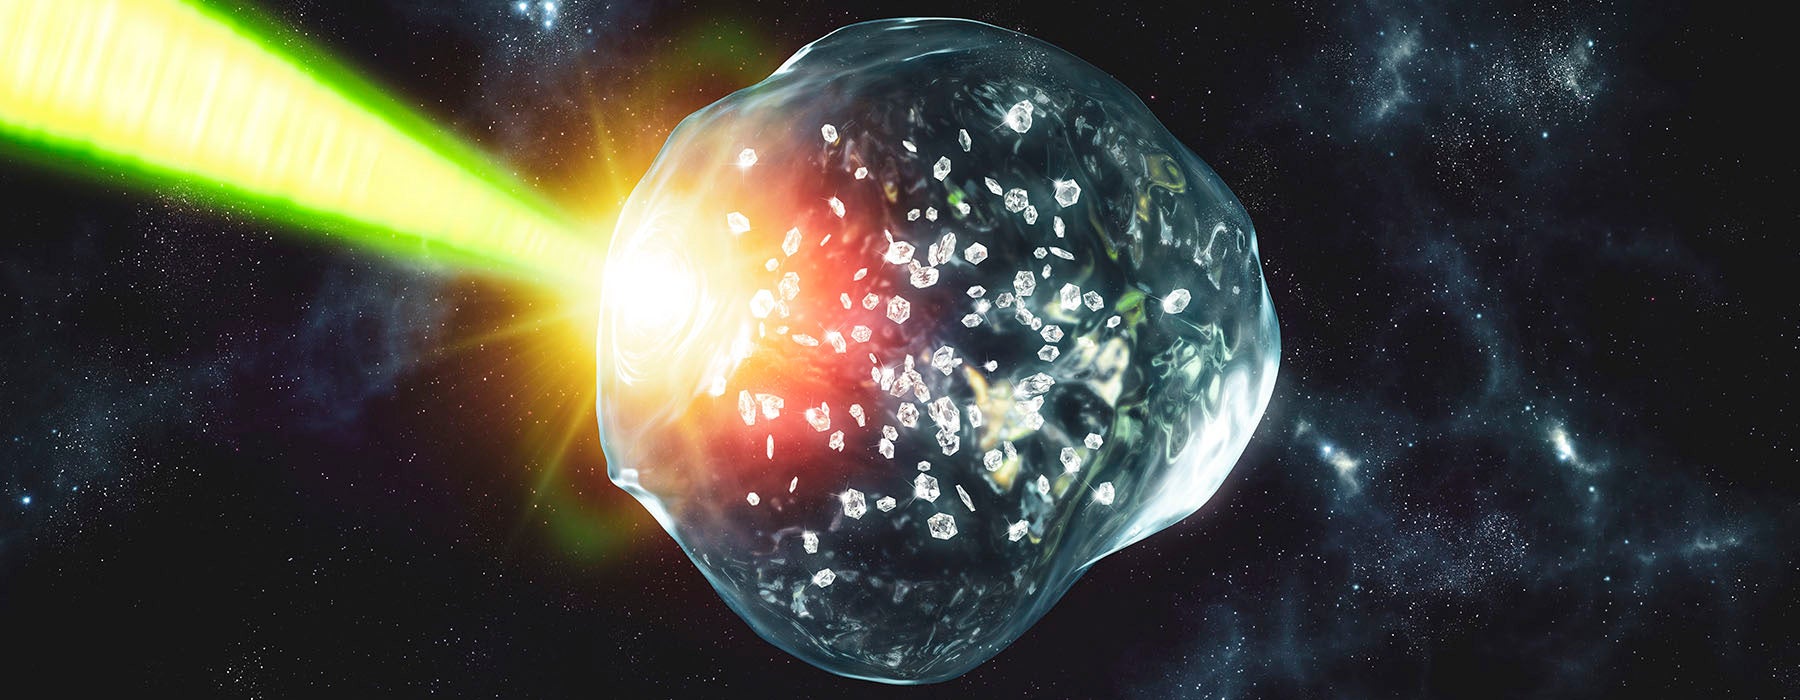 Dentro de planetas de hielo gigantes podría estar lloviendo diamantes